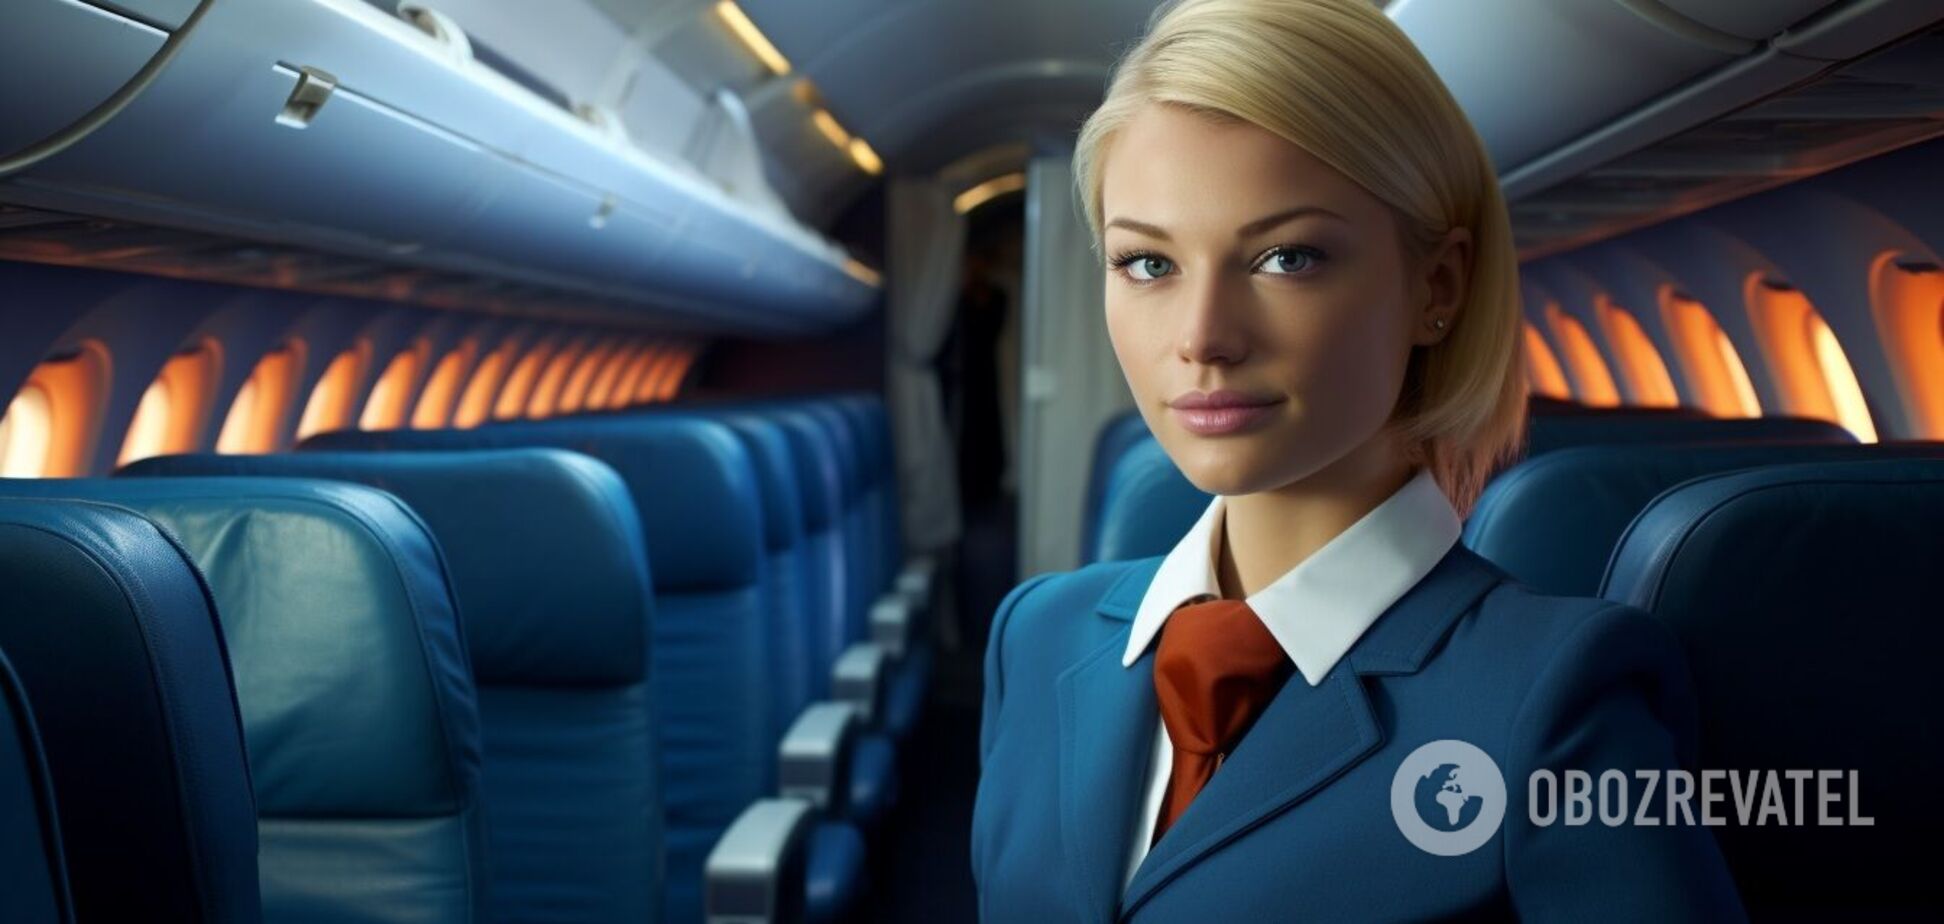 Не снимайте носки и смывайте после себя: стюардесса назвала главные правила этикета в самолете